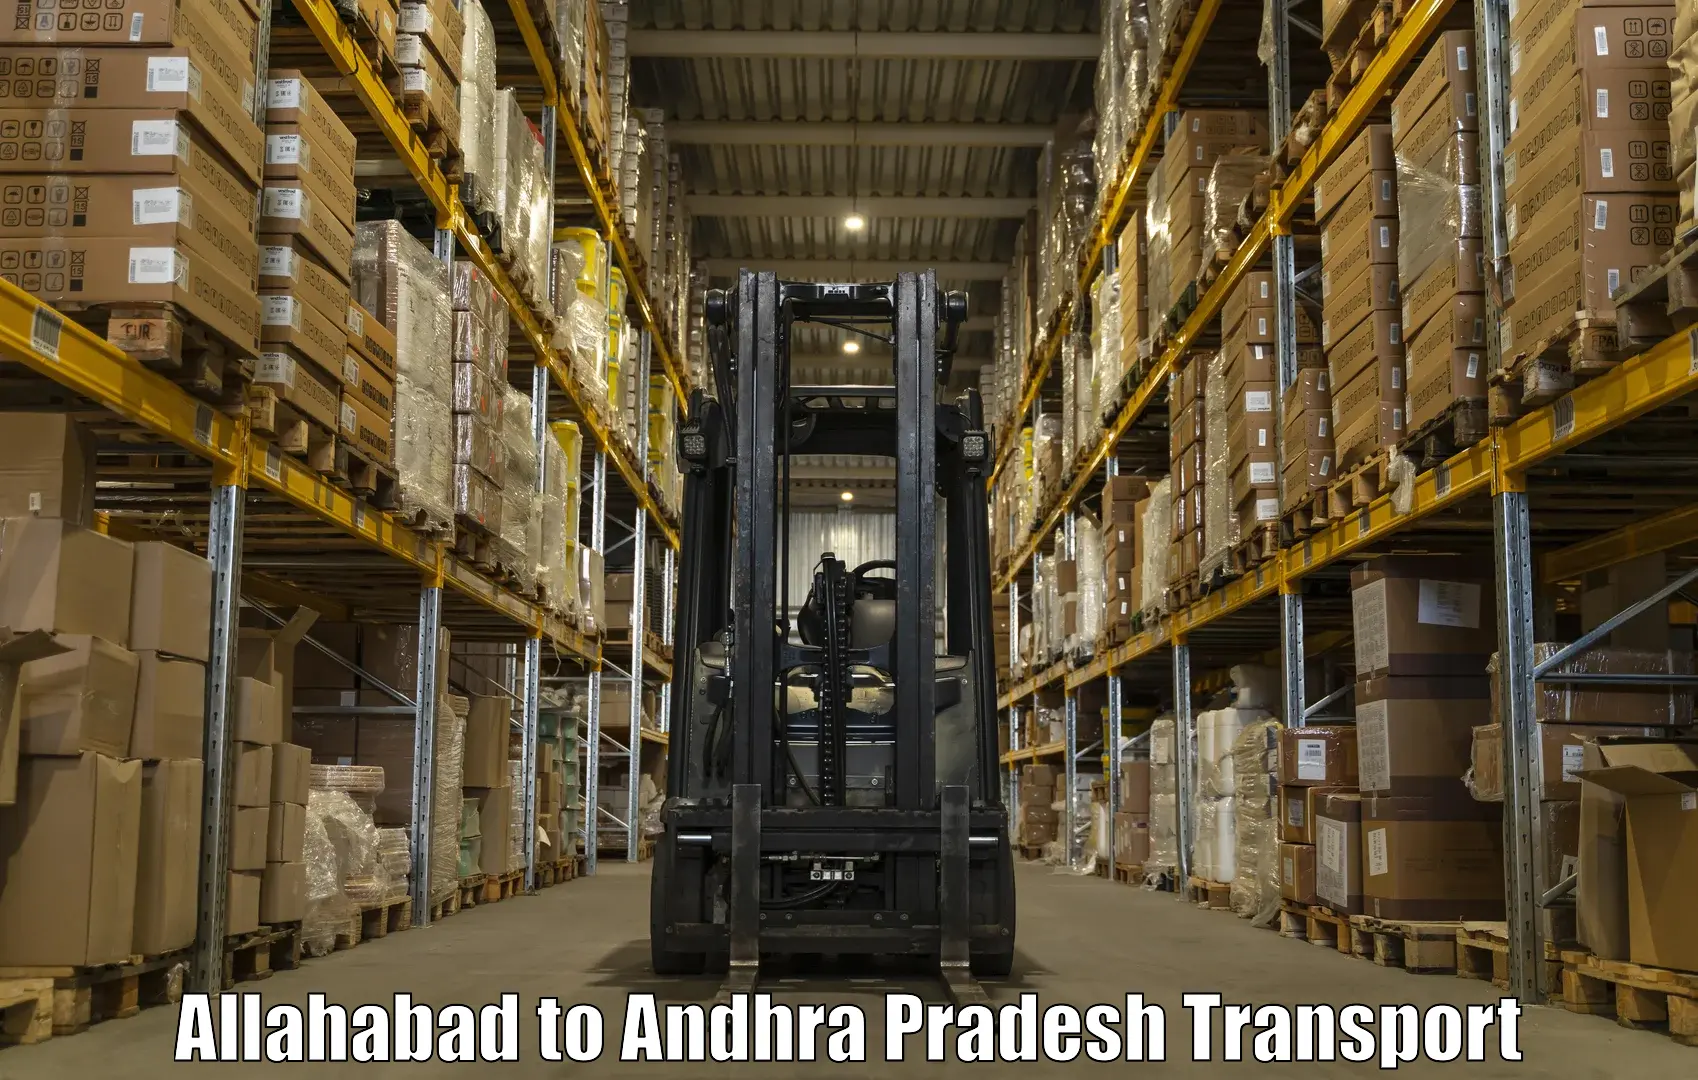 Shipping partner Allahabad to Hindupur